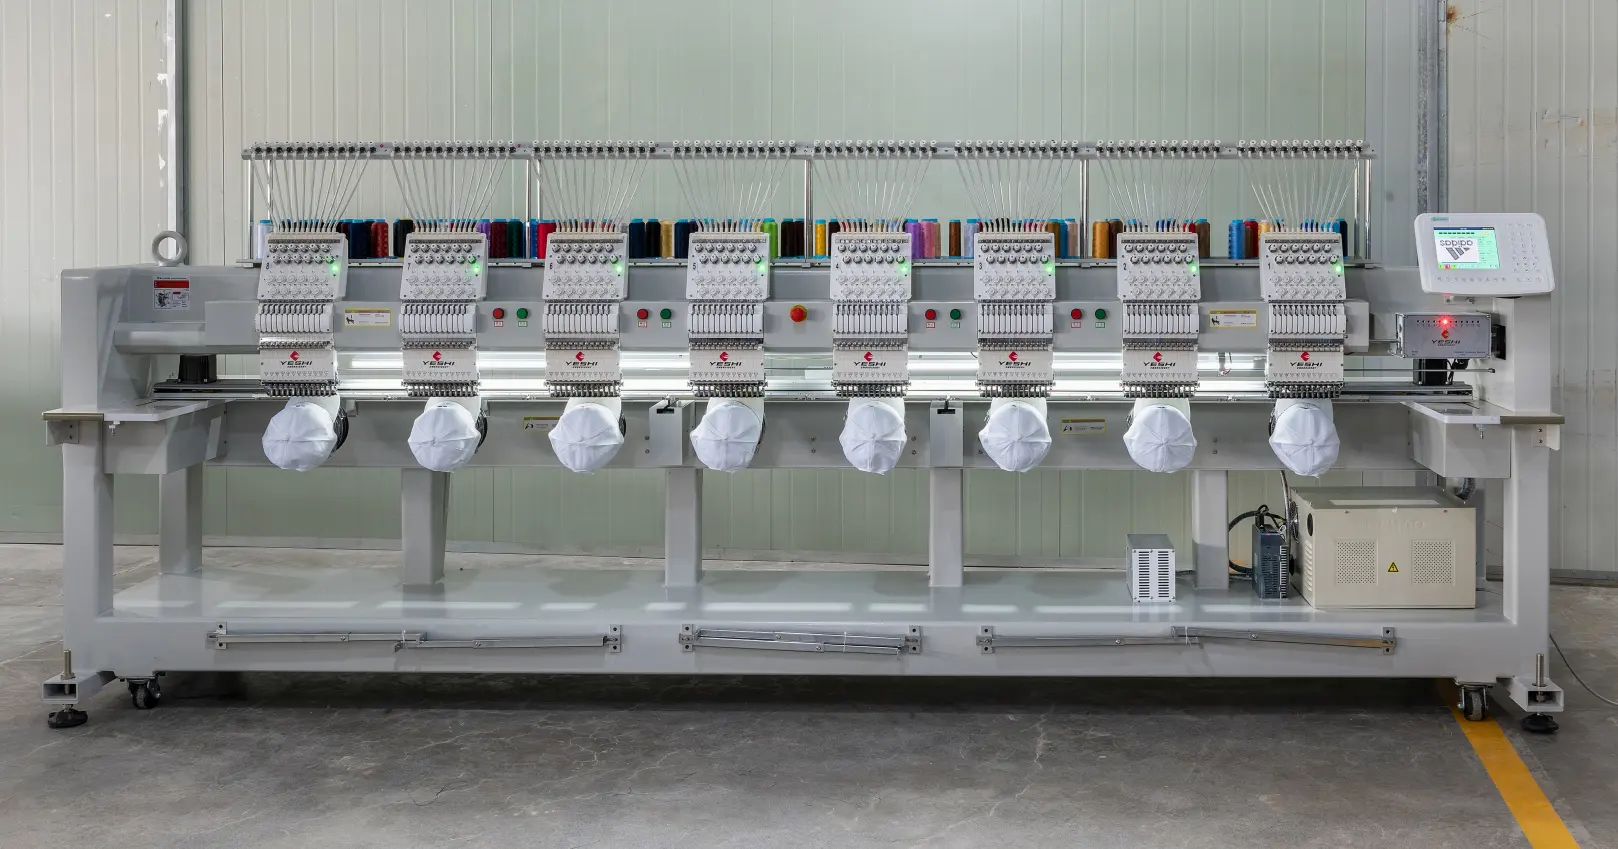 أحدث آلة تطريز ملابس صناعية رقمية صناعة 2022 تعمل بالحاسوب, 9 12 15 إبرة ، 8 رؤوس ، ماكينة تطريز للتيشيرت